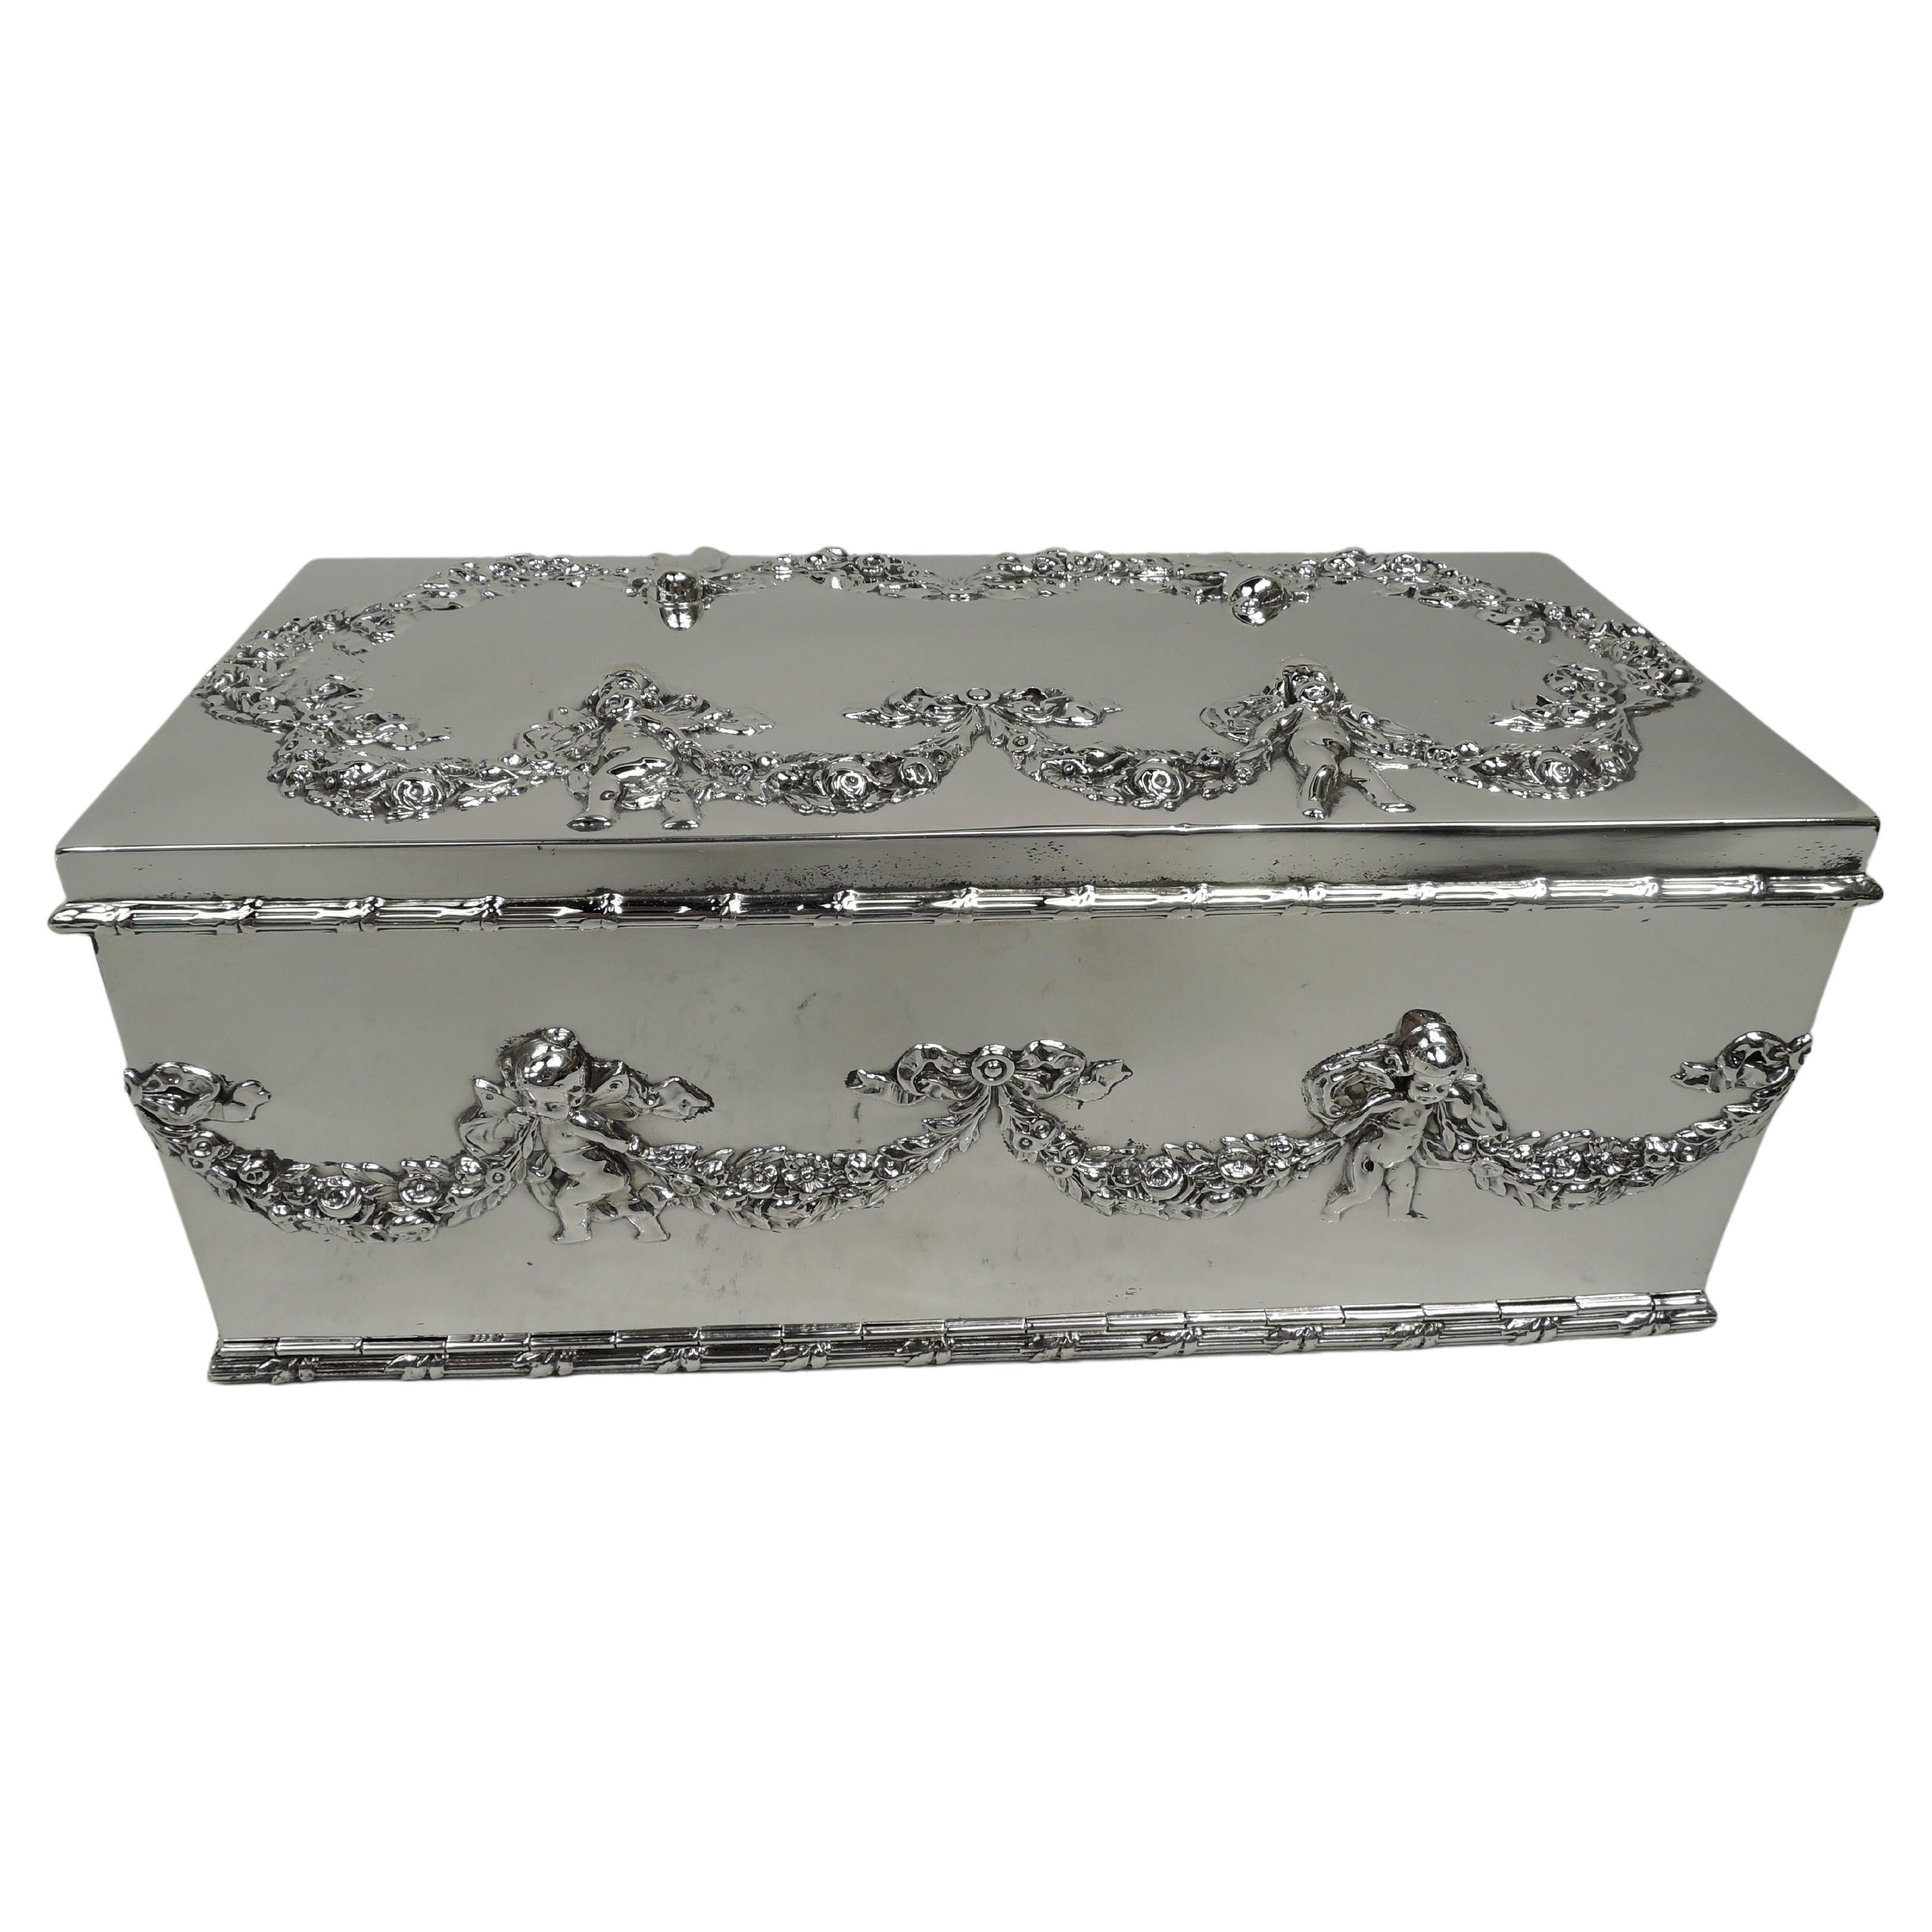 American Edwardian Regency Sterling Silver Jewelry Box with Cherubs